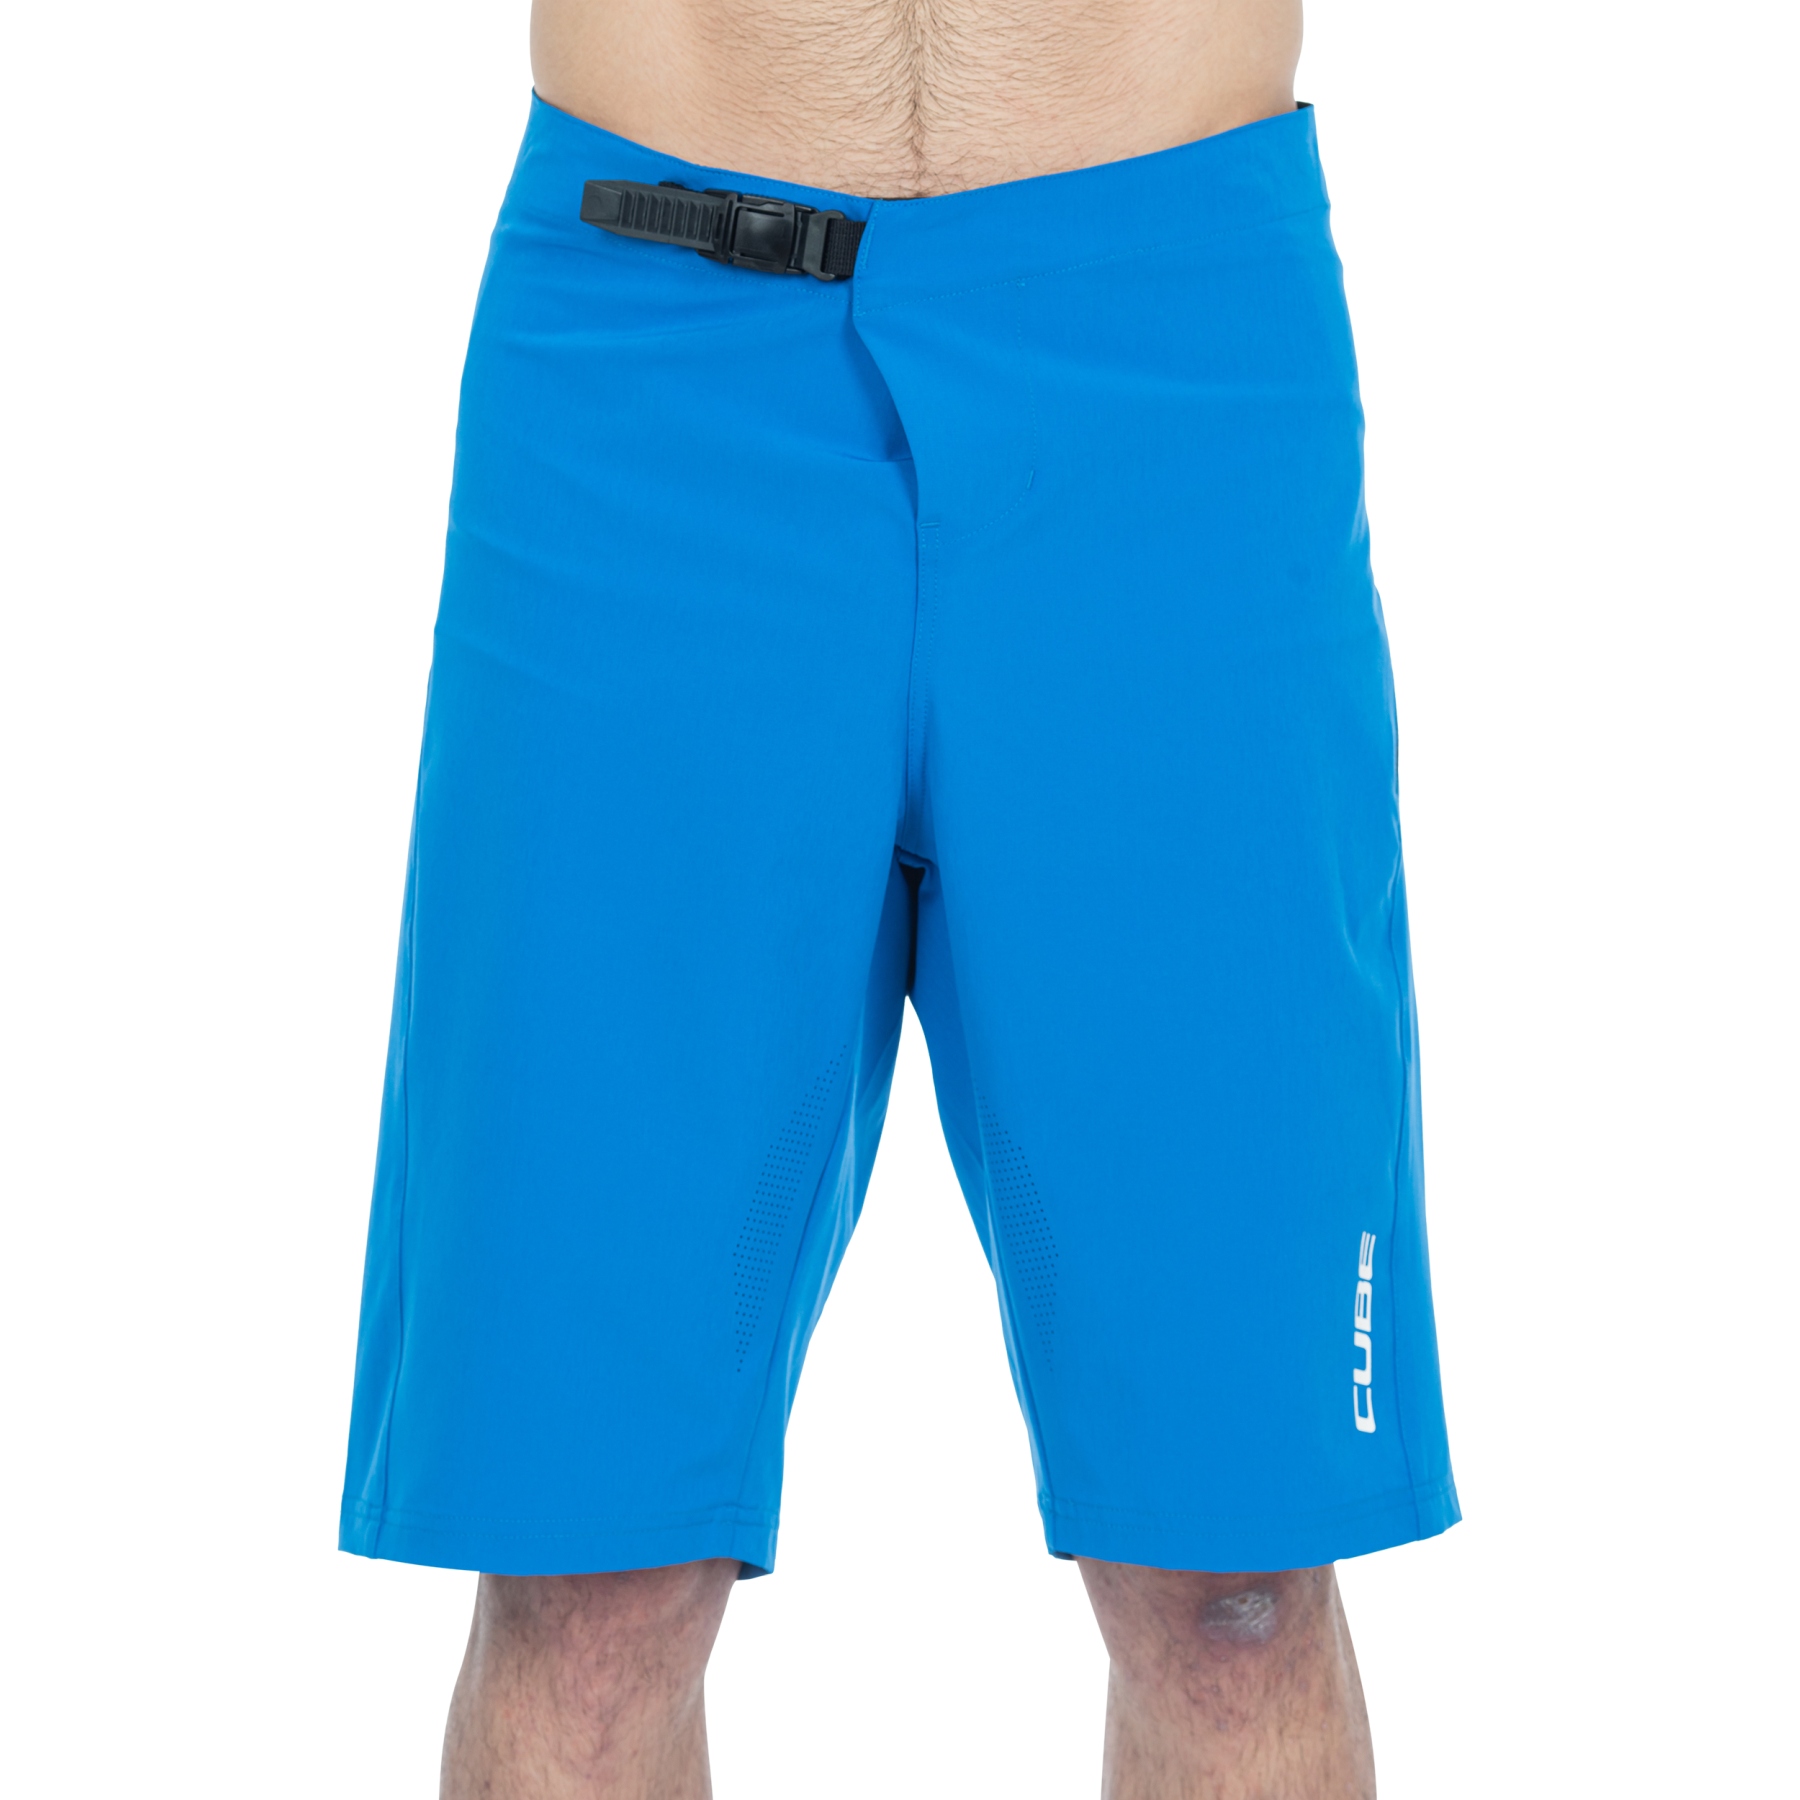 Produktbild von CUBE VERTEX Lightweight Baggy Shorts Herren - blau